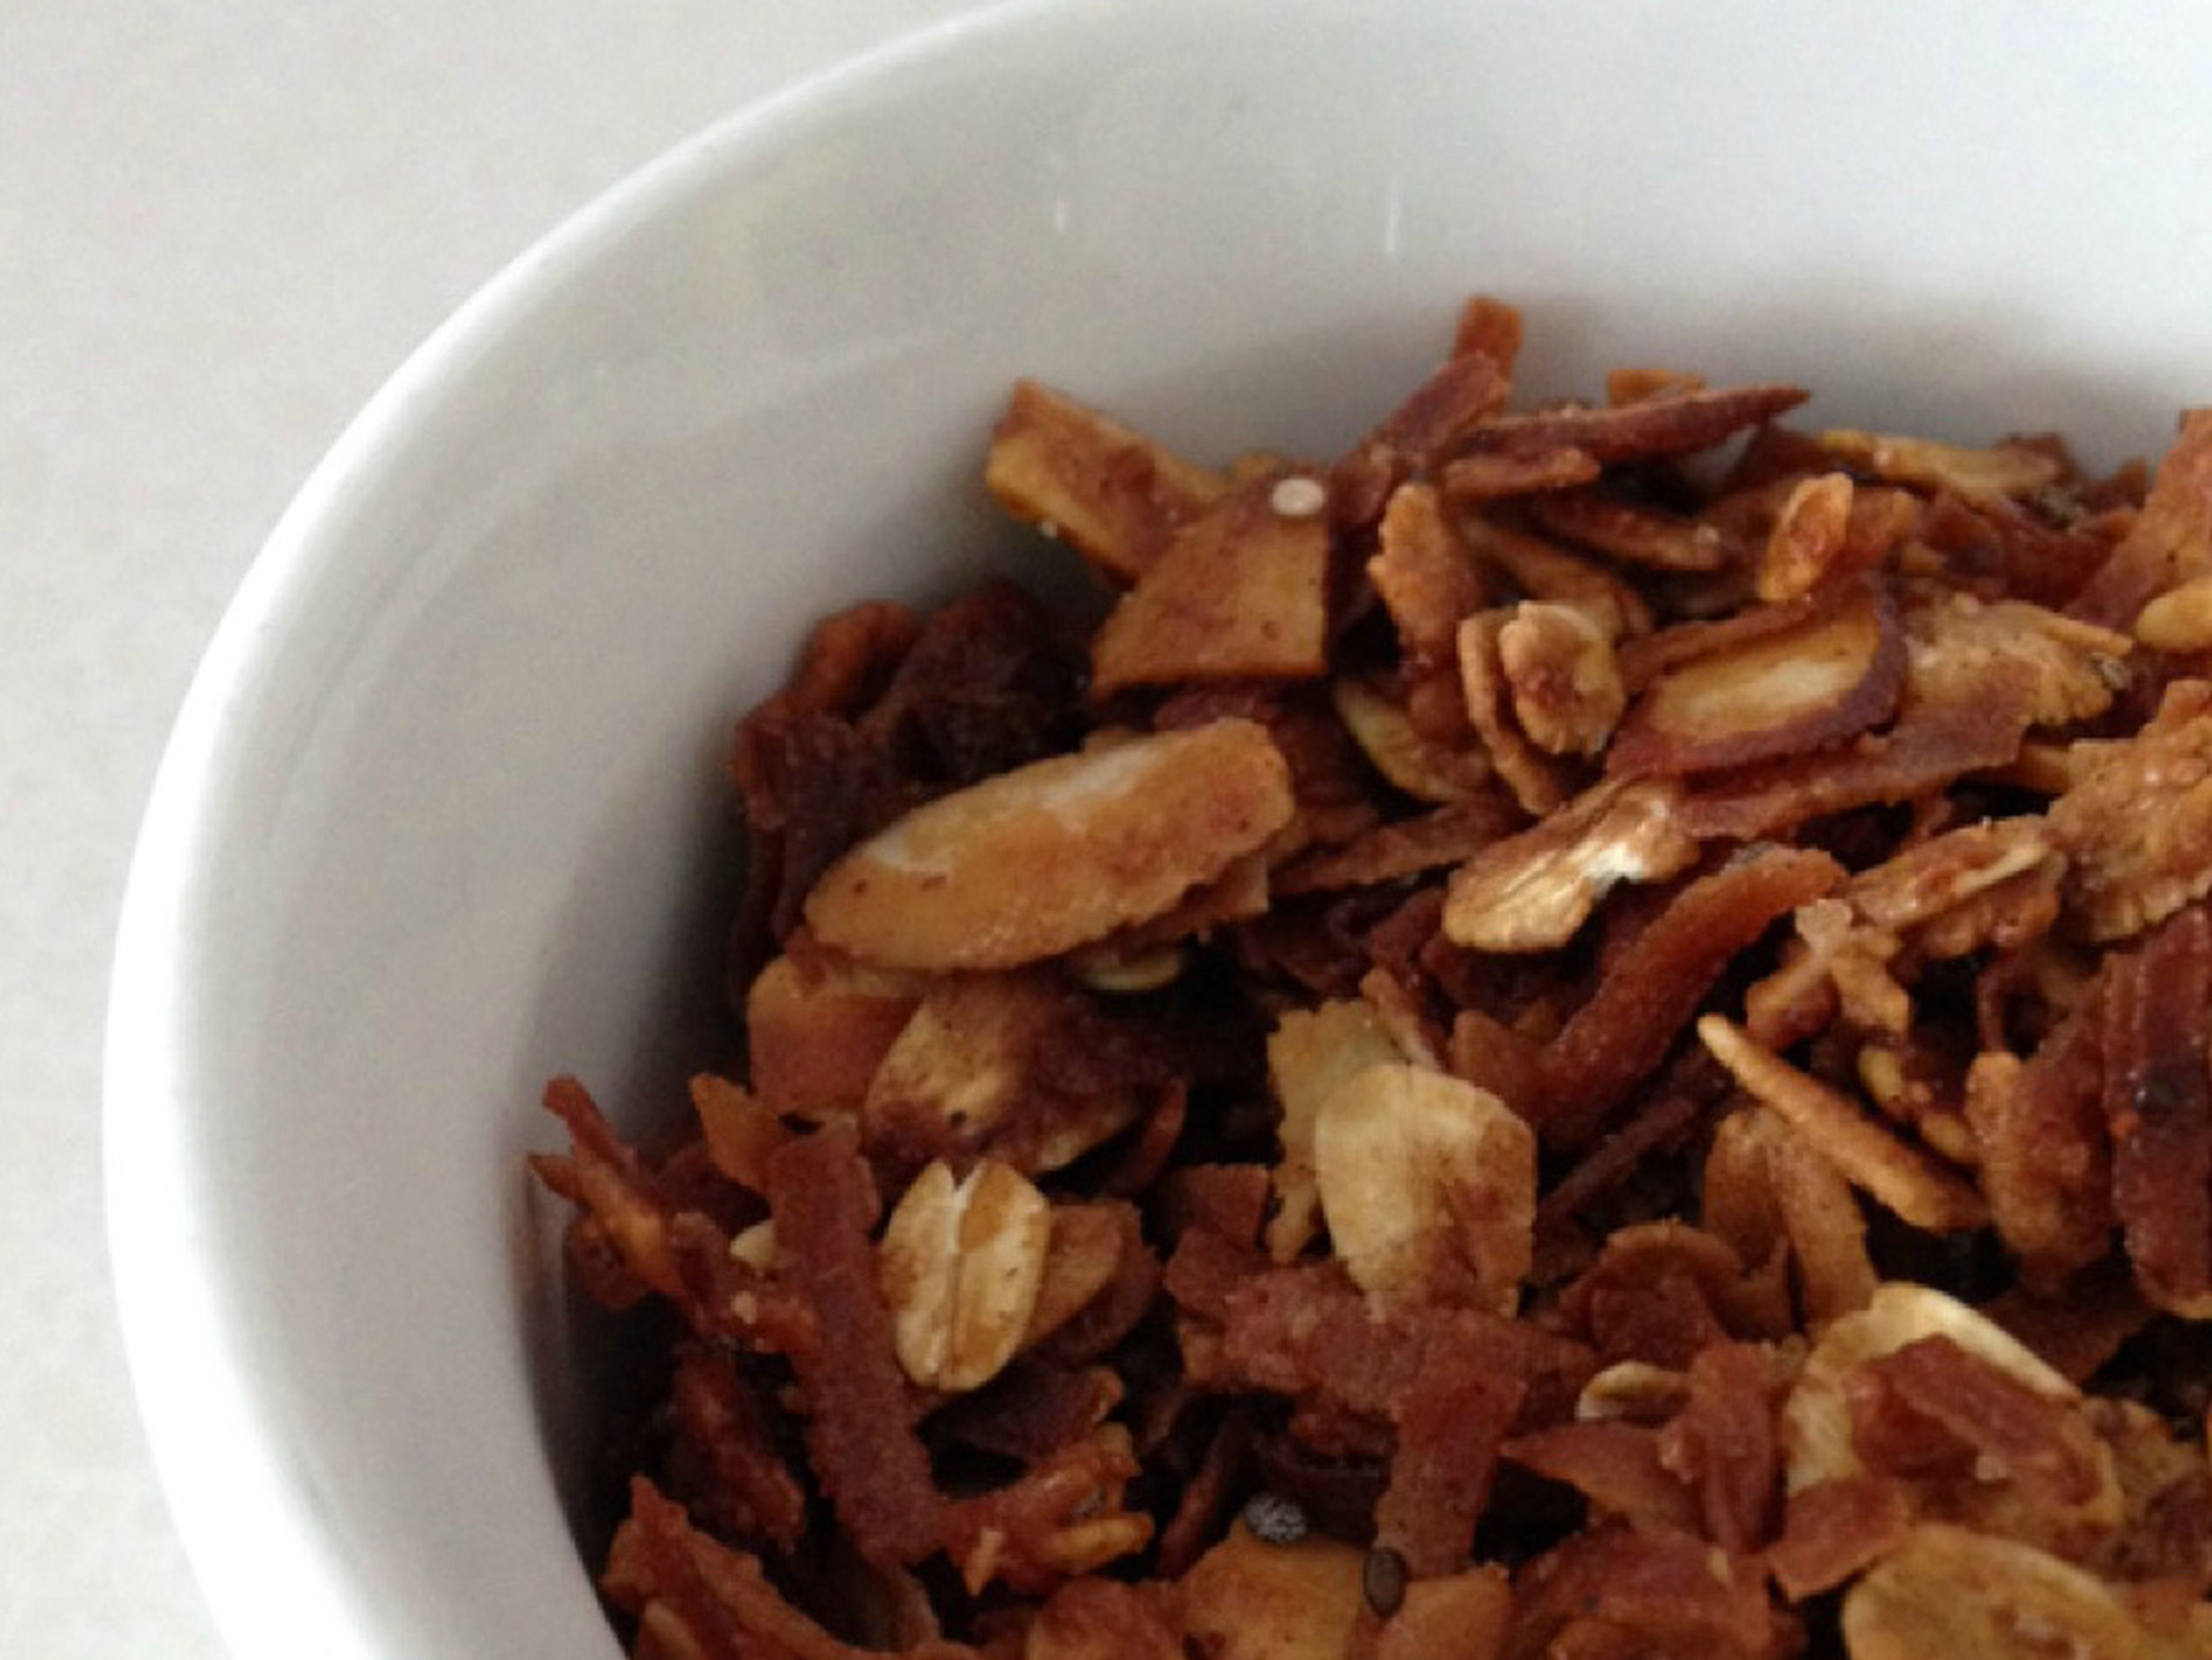 Coconut-almond granola